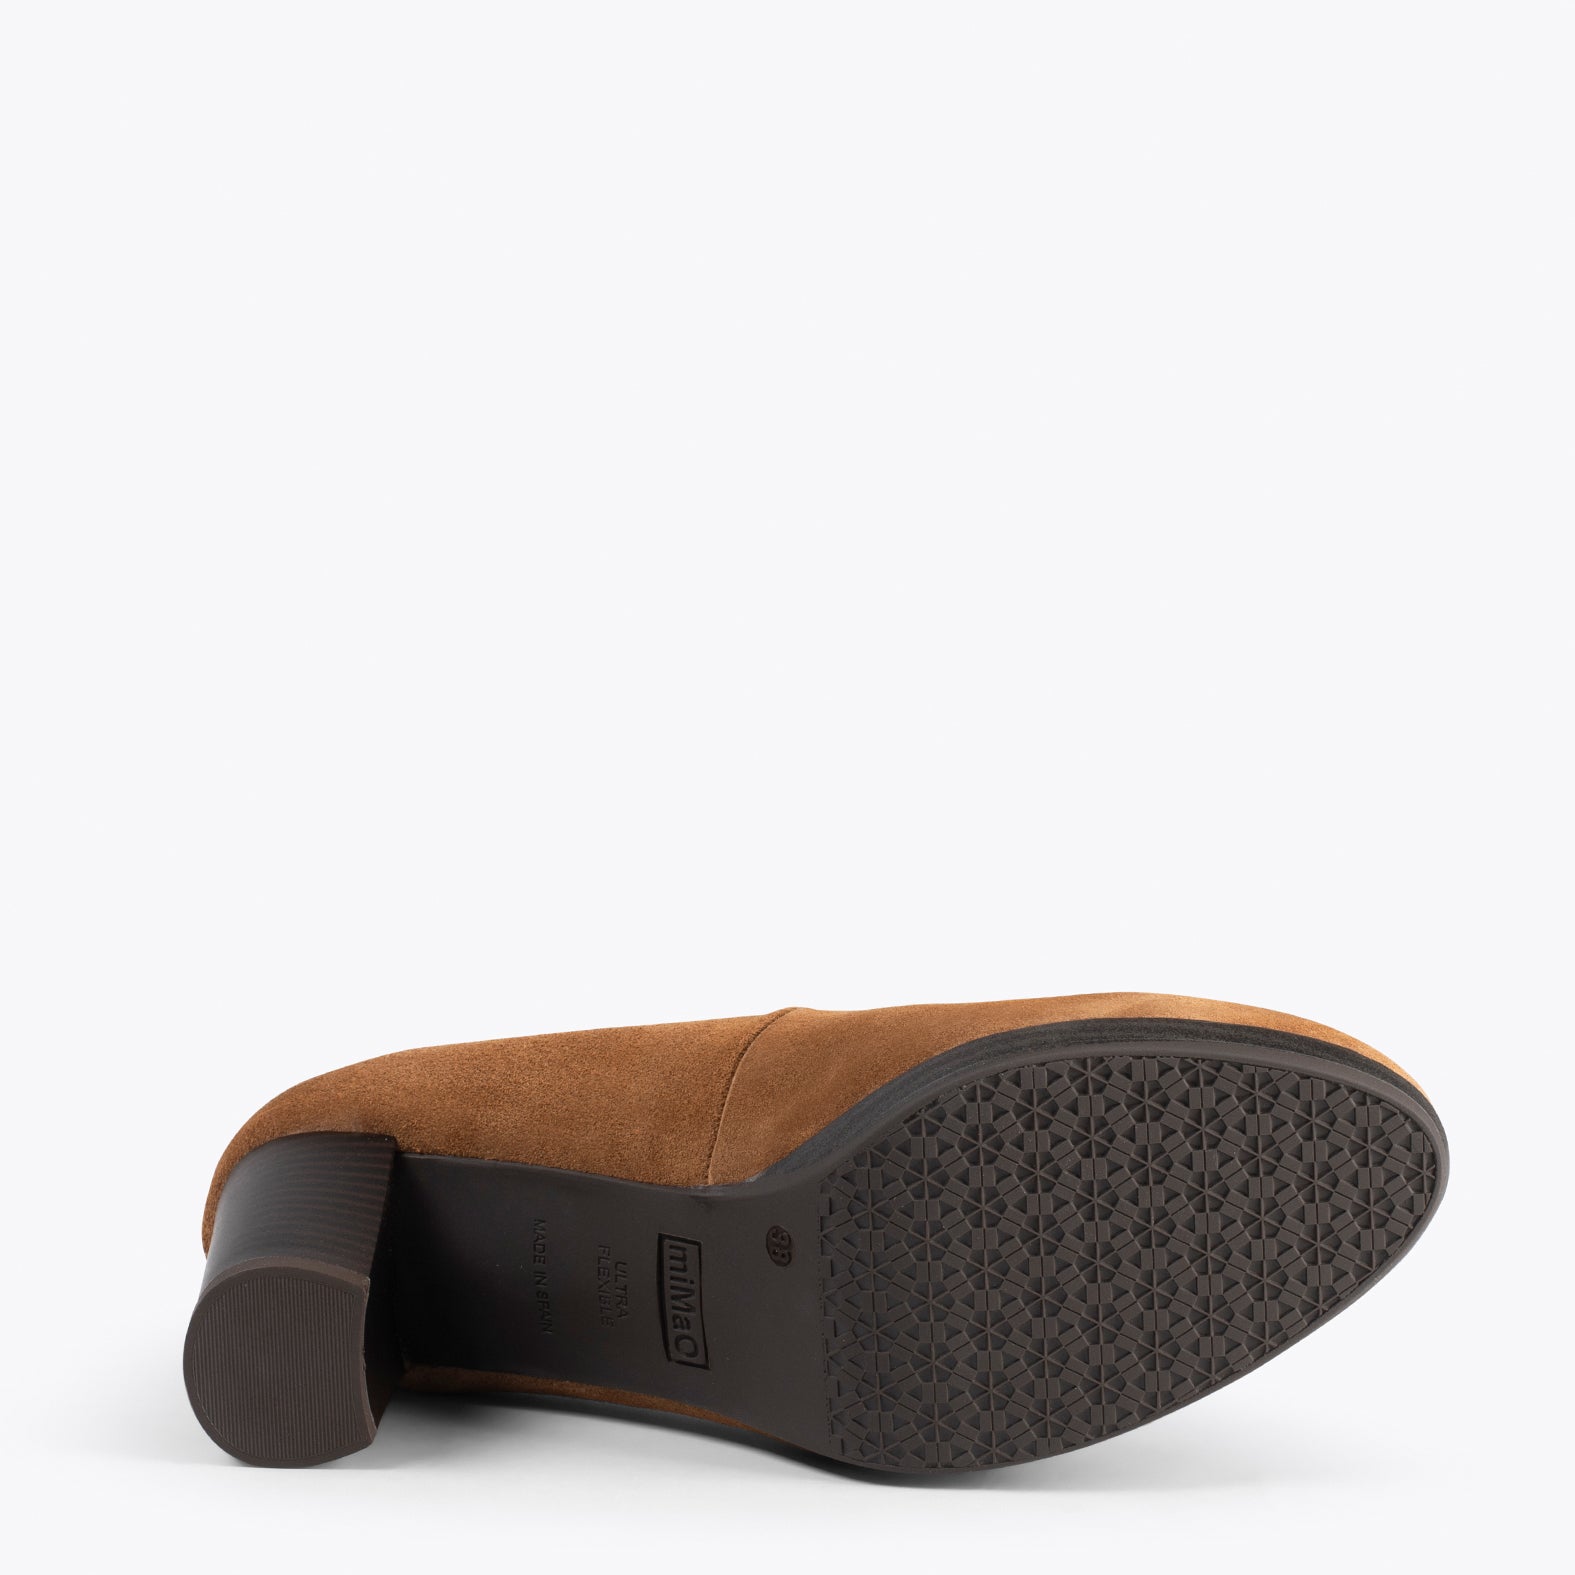 AZAFATA VINTAGE - Zapatos con tacón y plataforma CAMEL